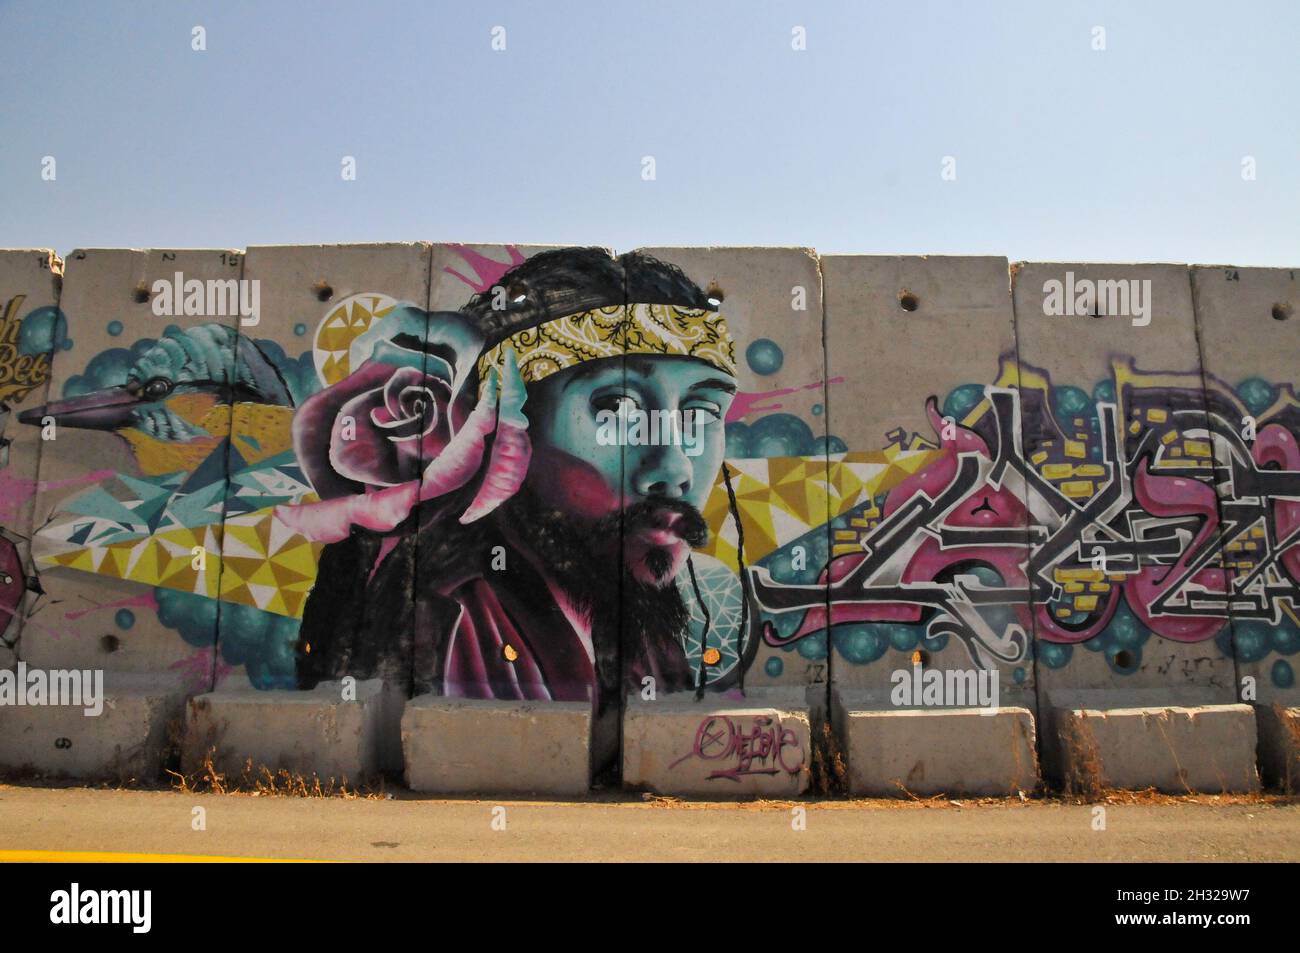 Betonplatten an der Grenze zwischen Israel und dem Libanon Grenzen Trennwand mit Graffiti in der Nähe der Siedlung Shtula auf der israelischen Seite Stockfoto